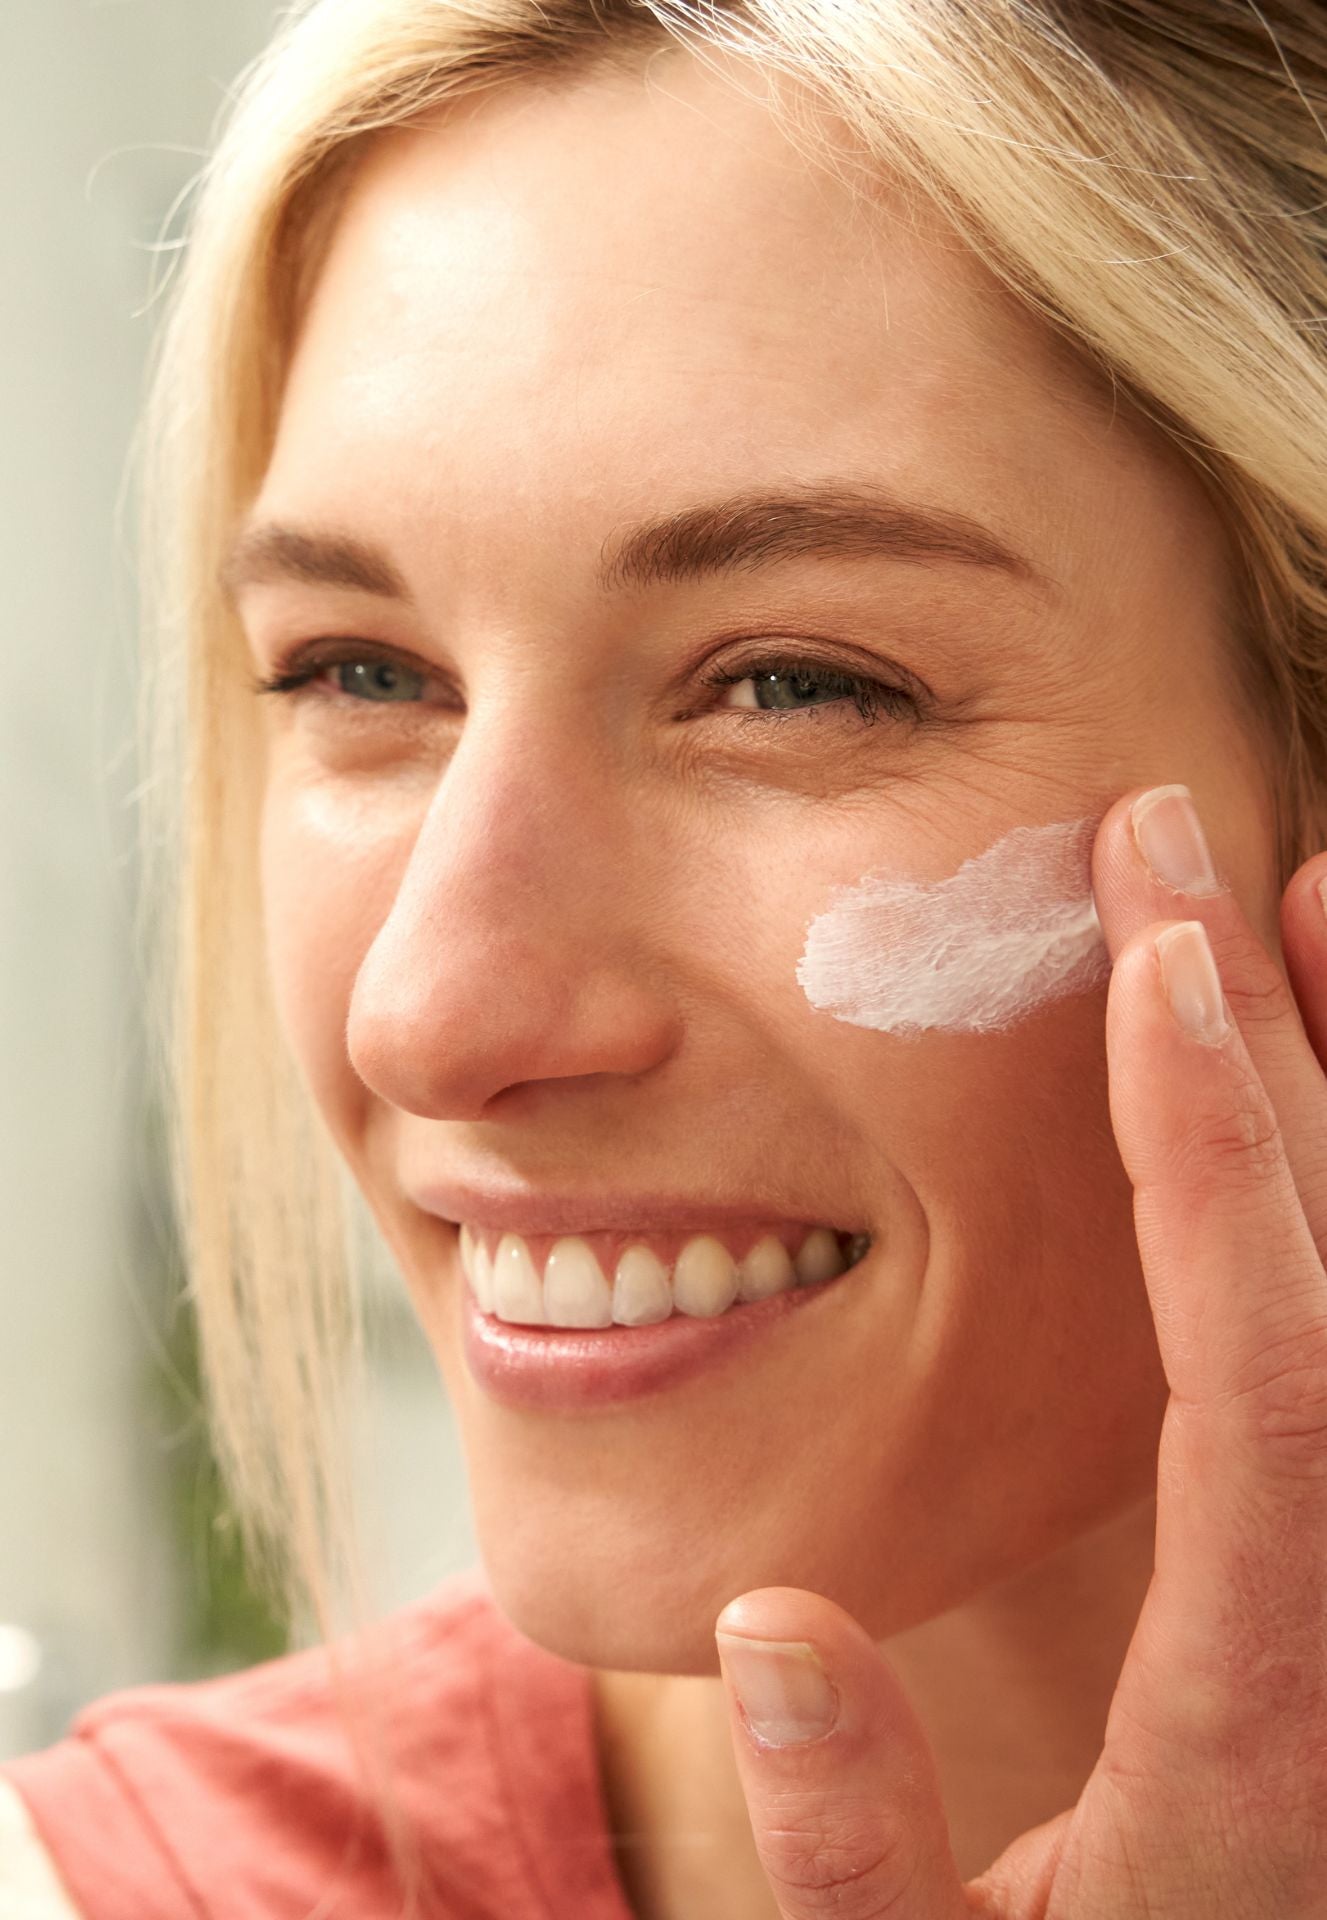 doTERRA Sun Face Mineral Sunscreen Daily Moisturizer